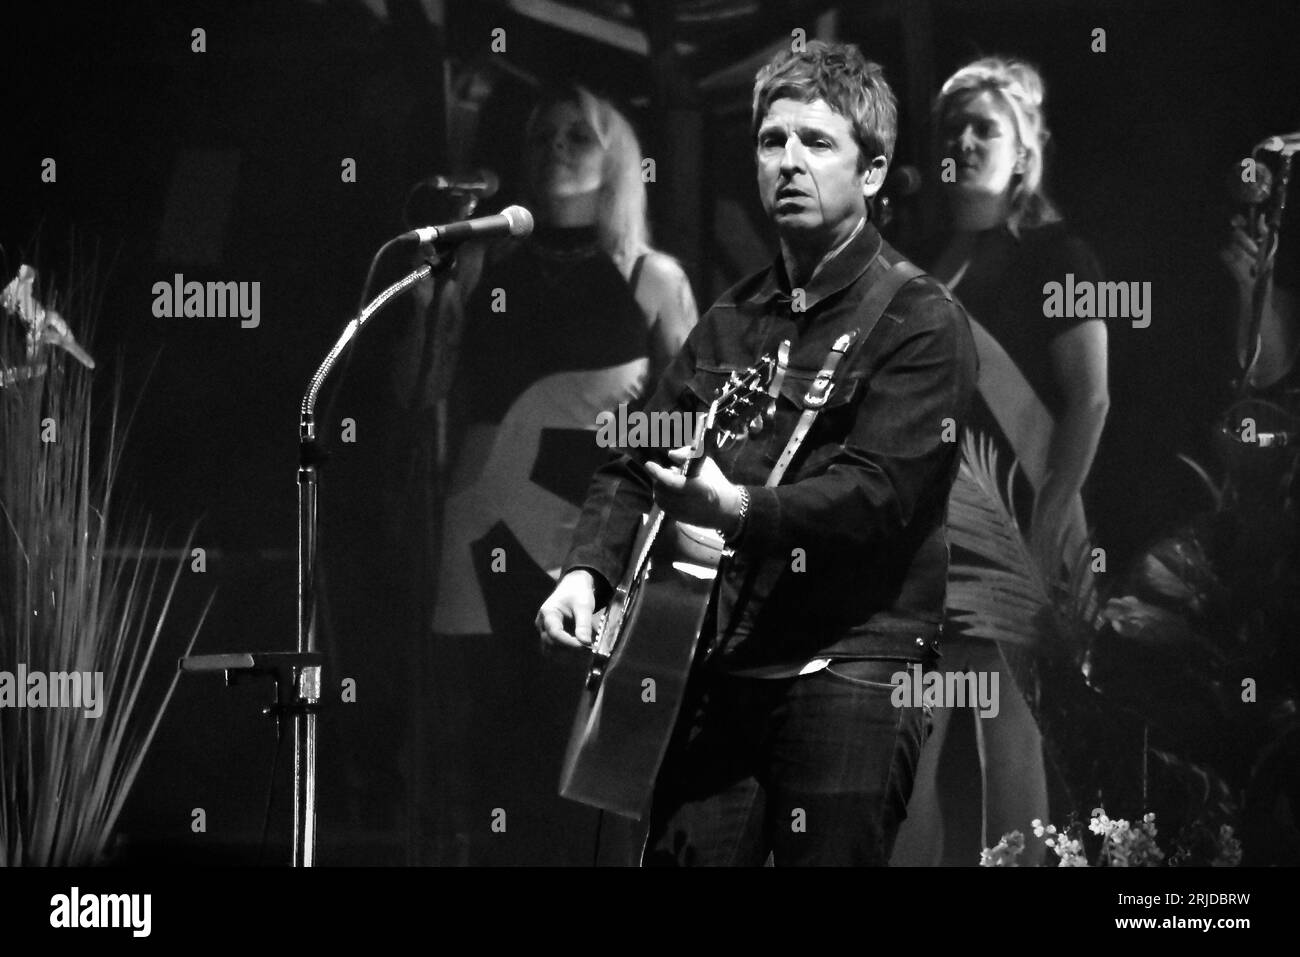 Noel Gallagher wurde als Noel Gallaghers High Flying Birds Headliner des Hardwick Festivals im August 2023 dargestellt. Foto: James Hind/Alamy Stock Photo. Stockfoto